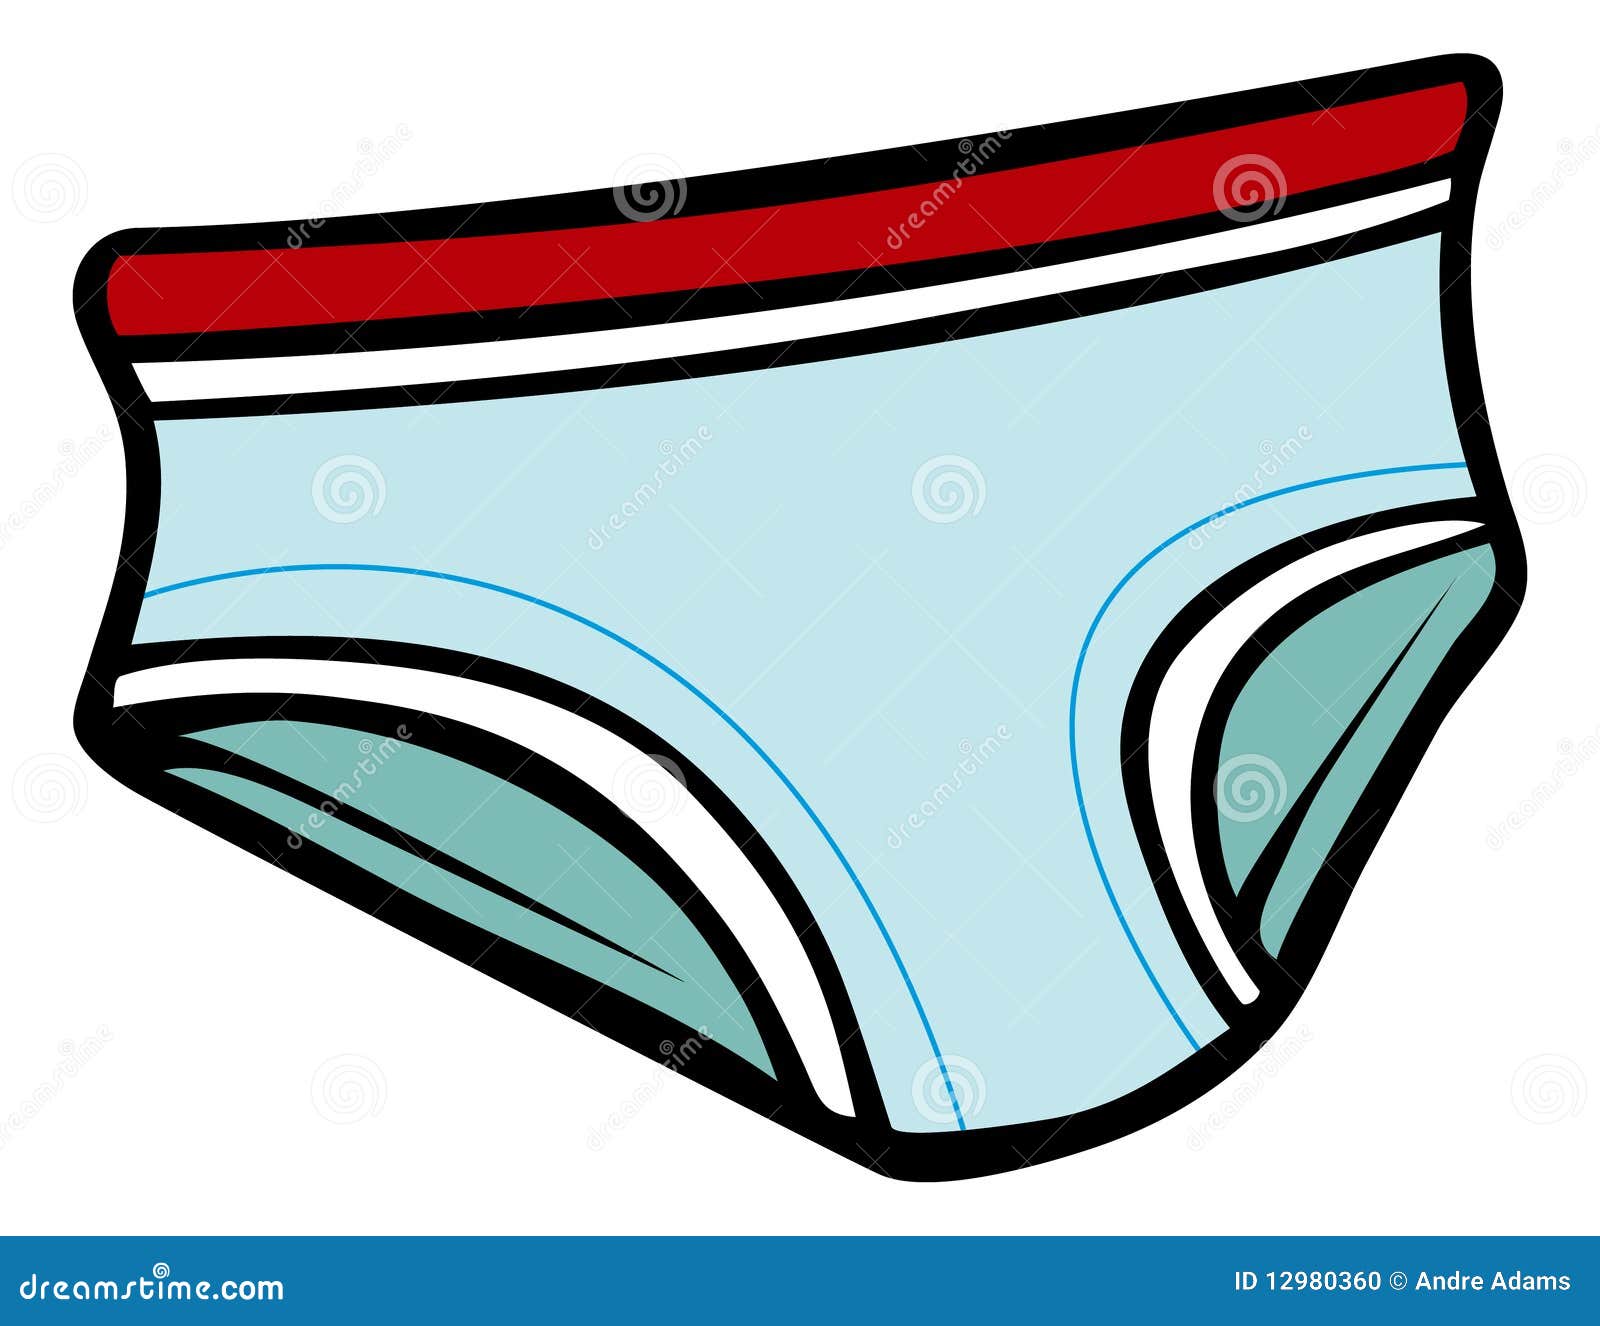 cartoon underwear clipart - photo #1